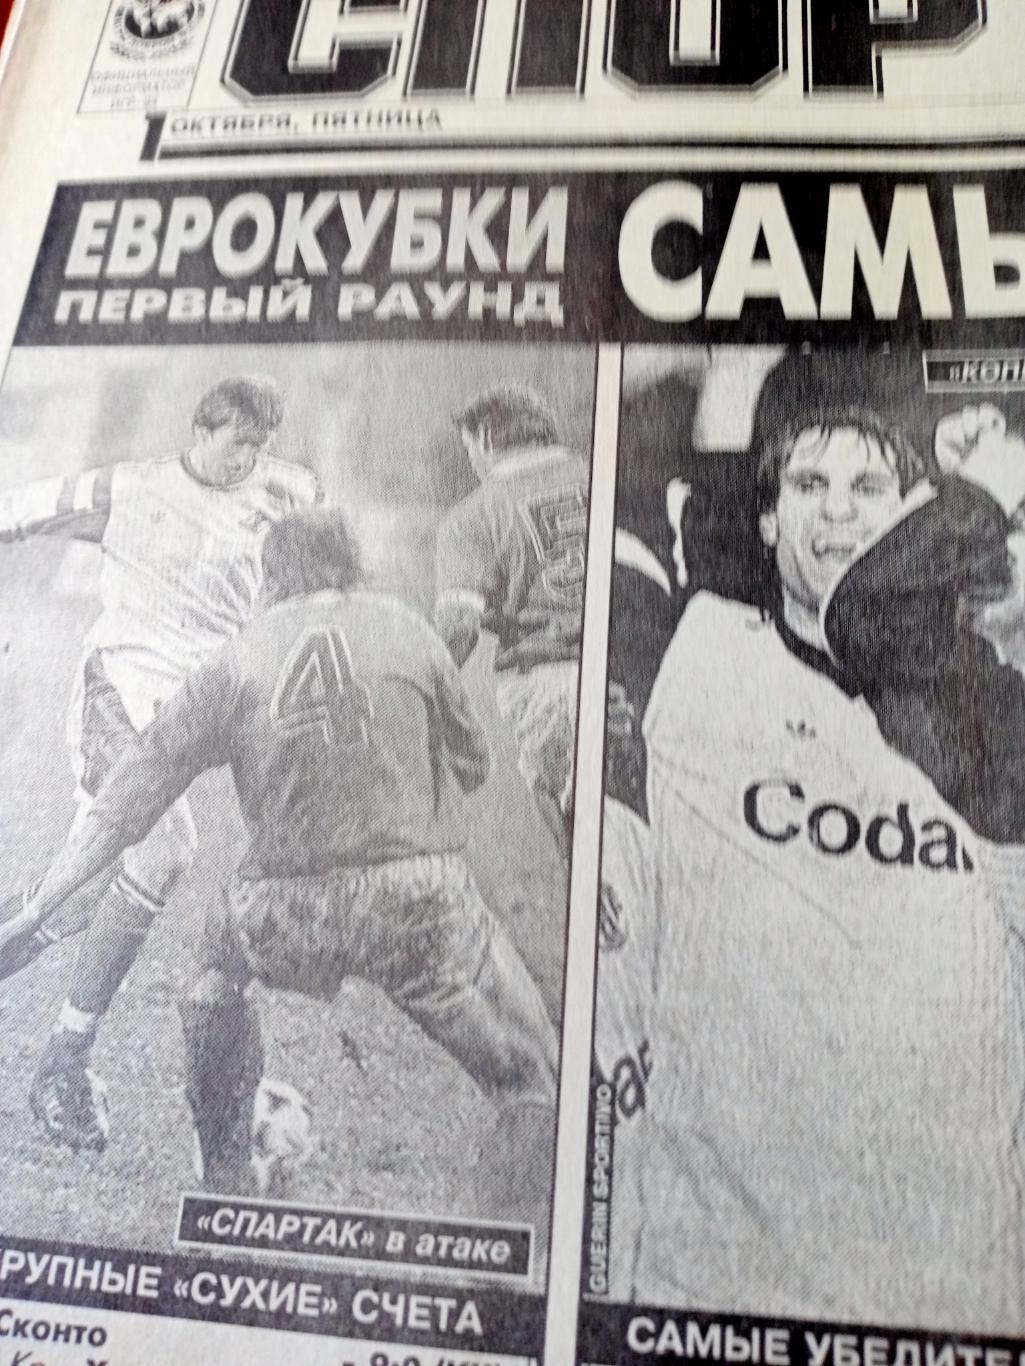 Еврокубки. Футбол. Спорт-Экспресс. 1993 год. 1 октября